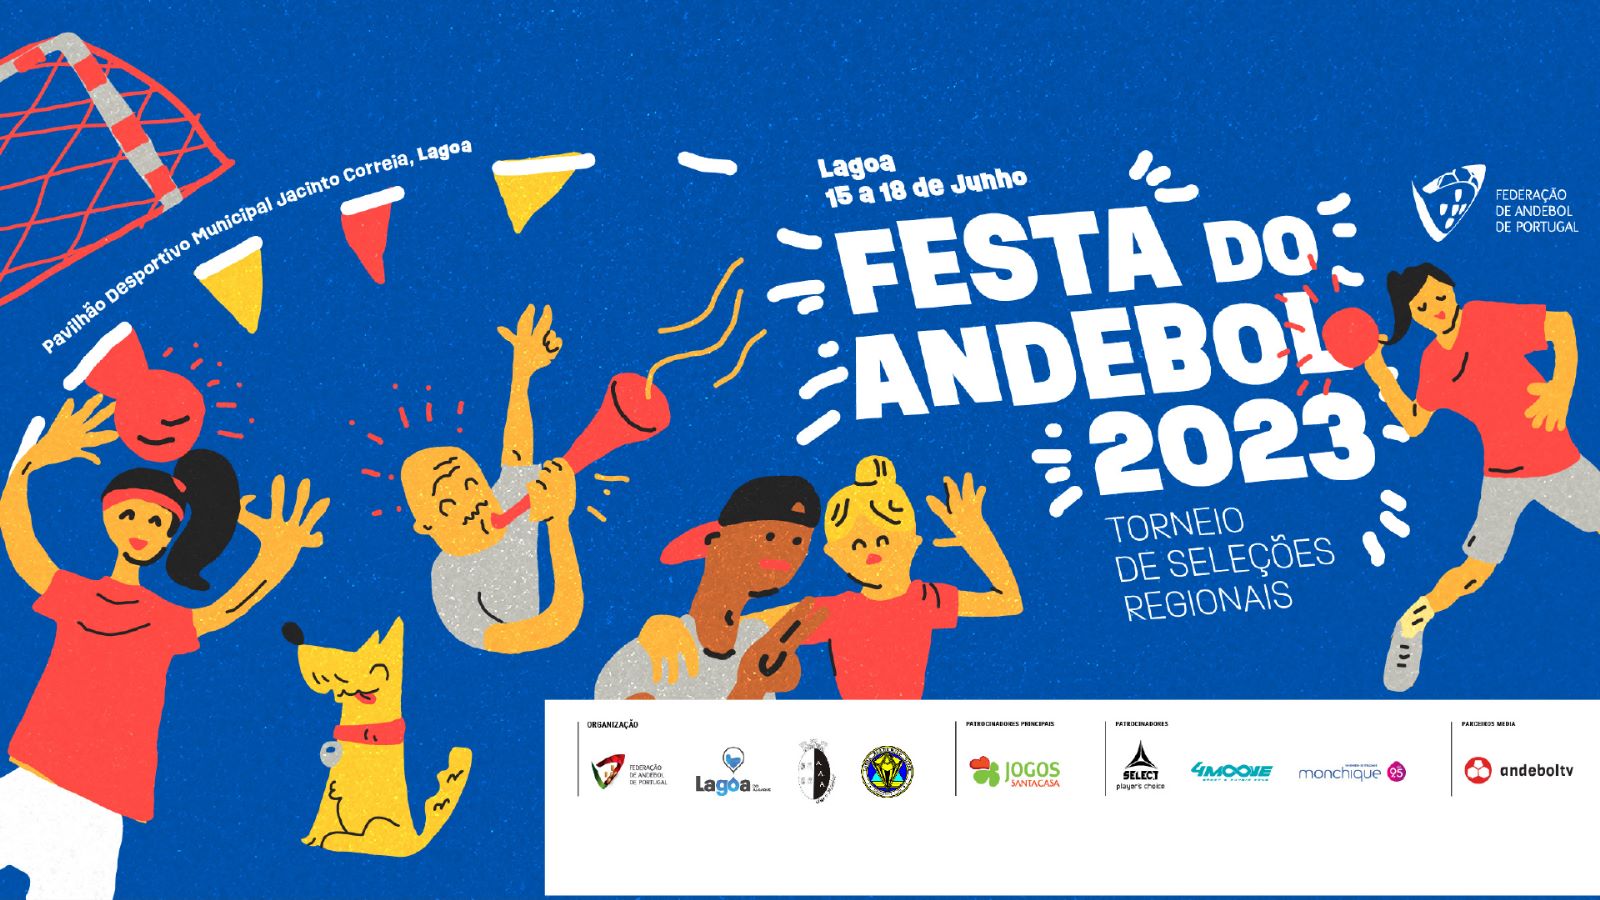 Festa do Andebol 2023 - Torneio de Seleções Regionais 